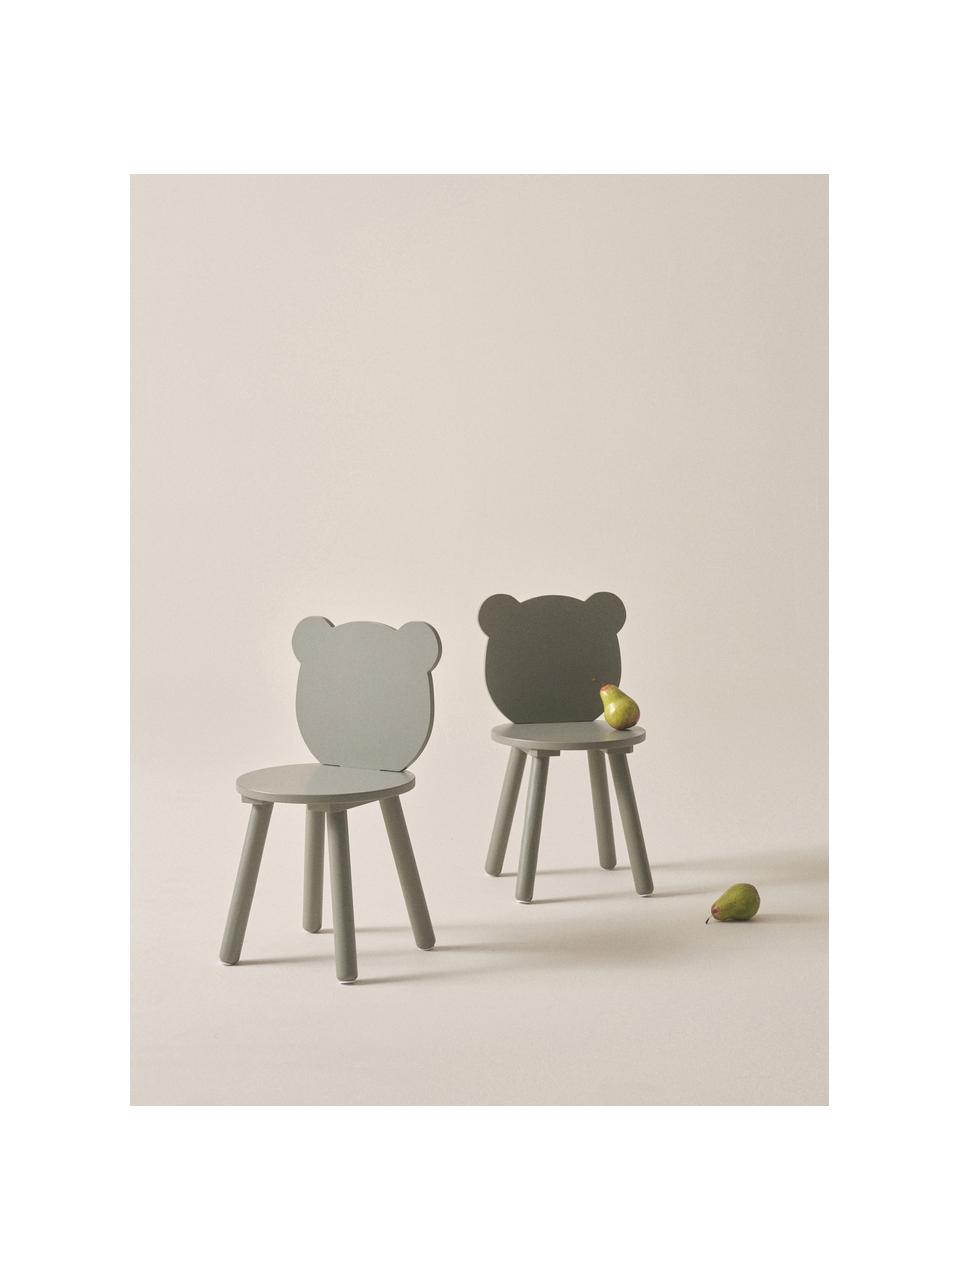 Chaise verte en bois pour enfant Beary, 2 pièces, Bois de pin, MDF (panneau en fibres de bois à densité moyenne), laqué, Vert, larg. 30 x haut. 58 cm